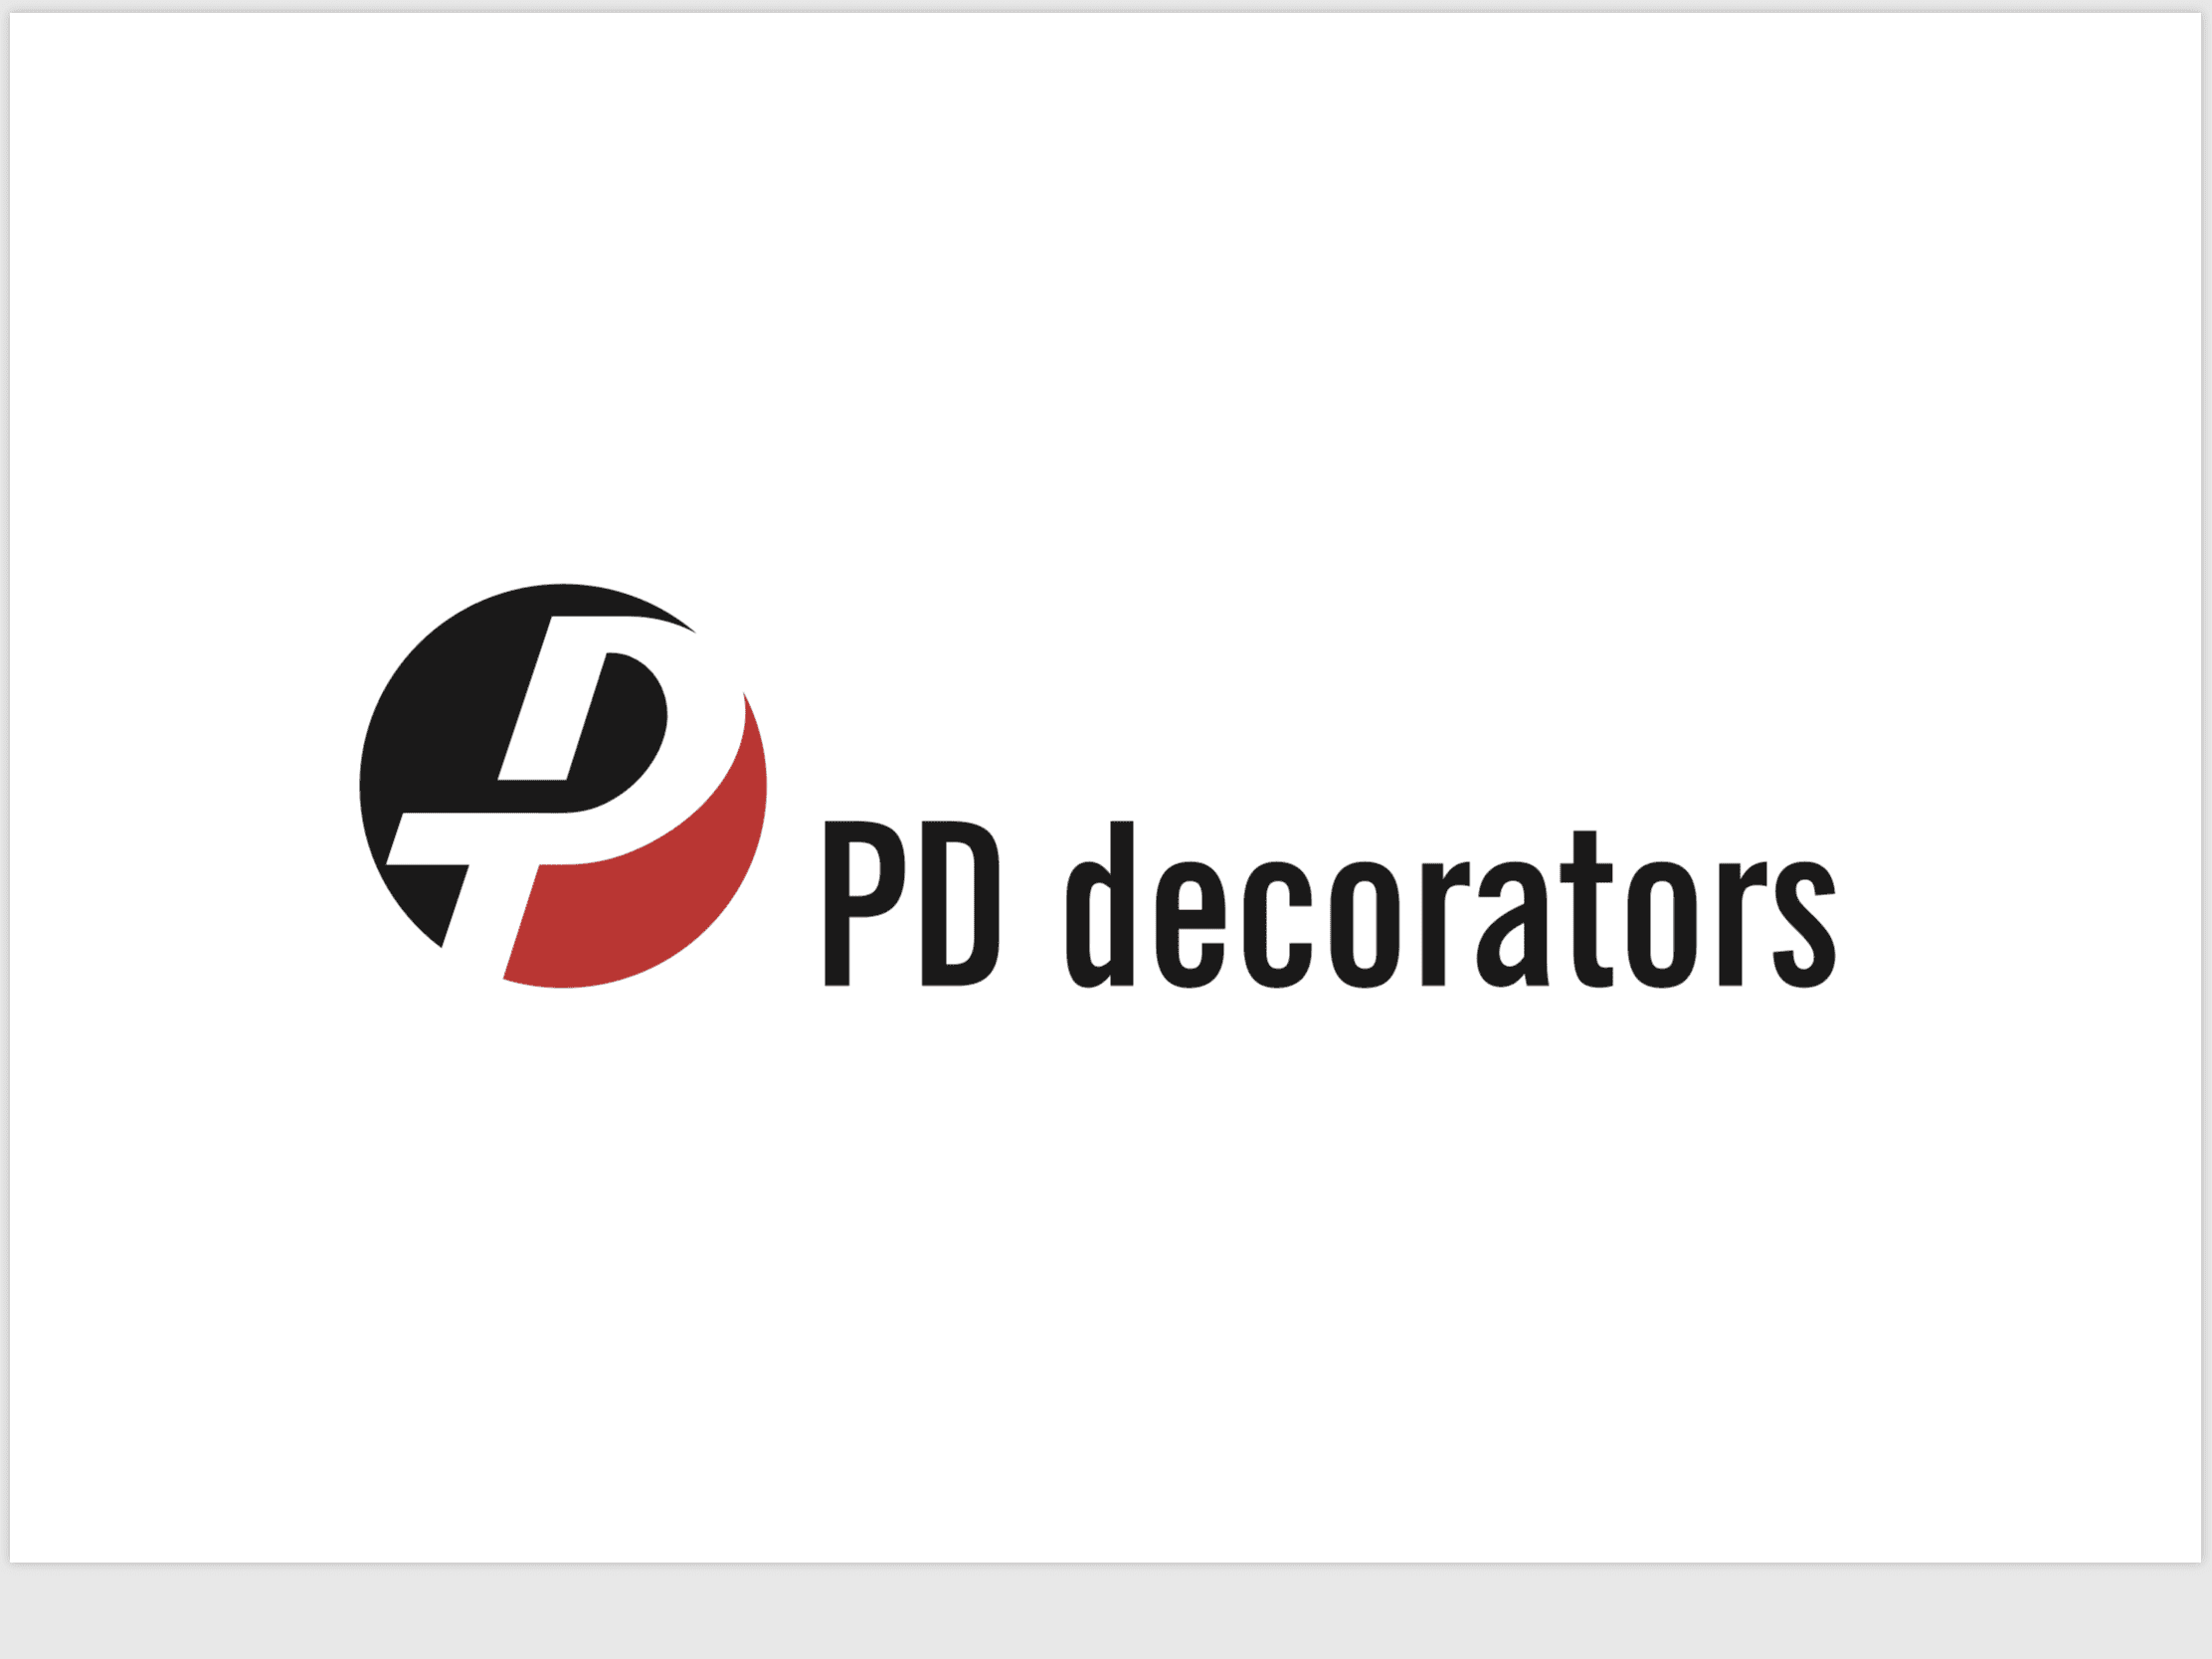 PD decorators